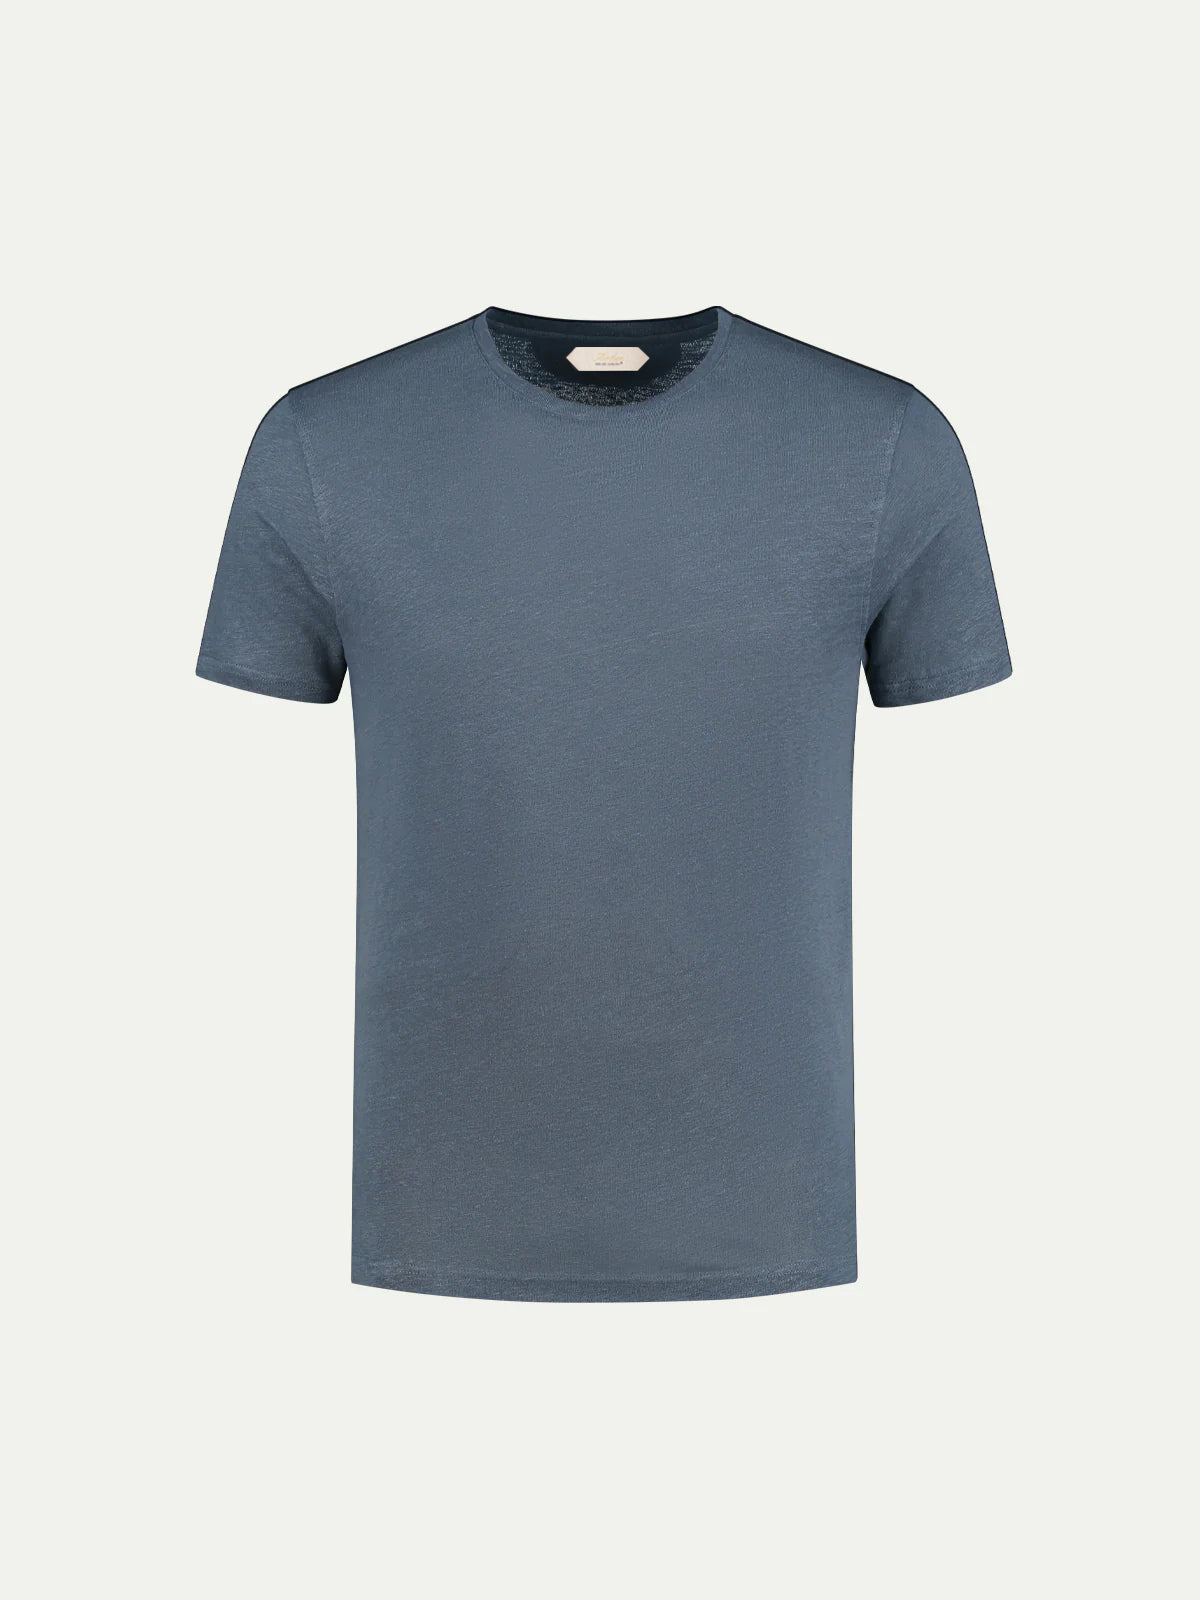 Aurélien Egyptisch Katoen T-shirt Steel Blue XXXL product